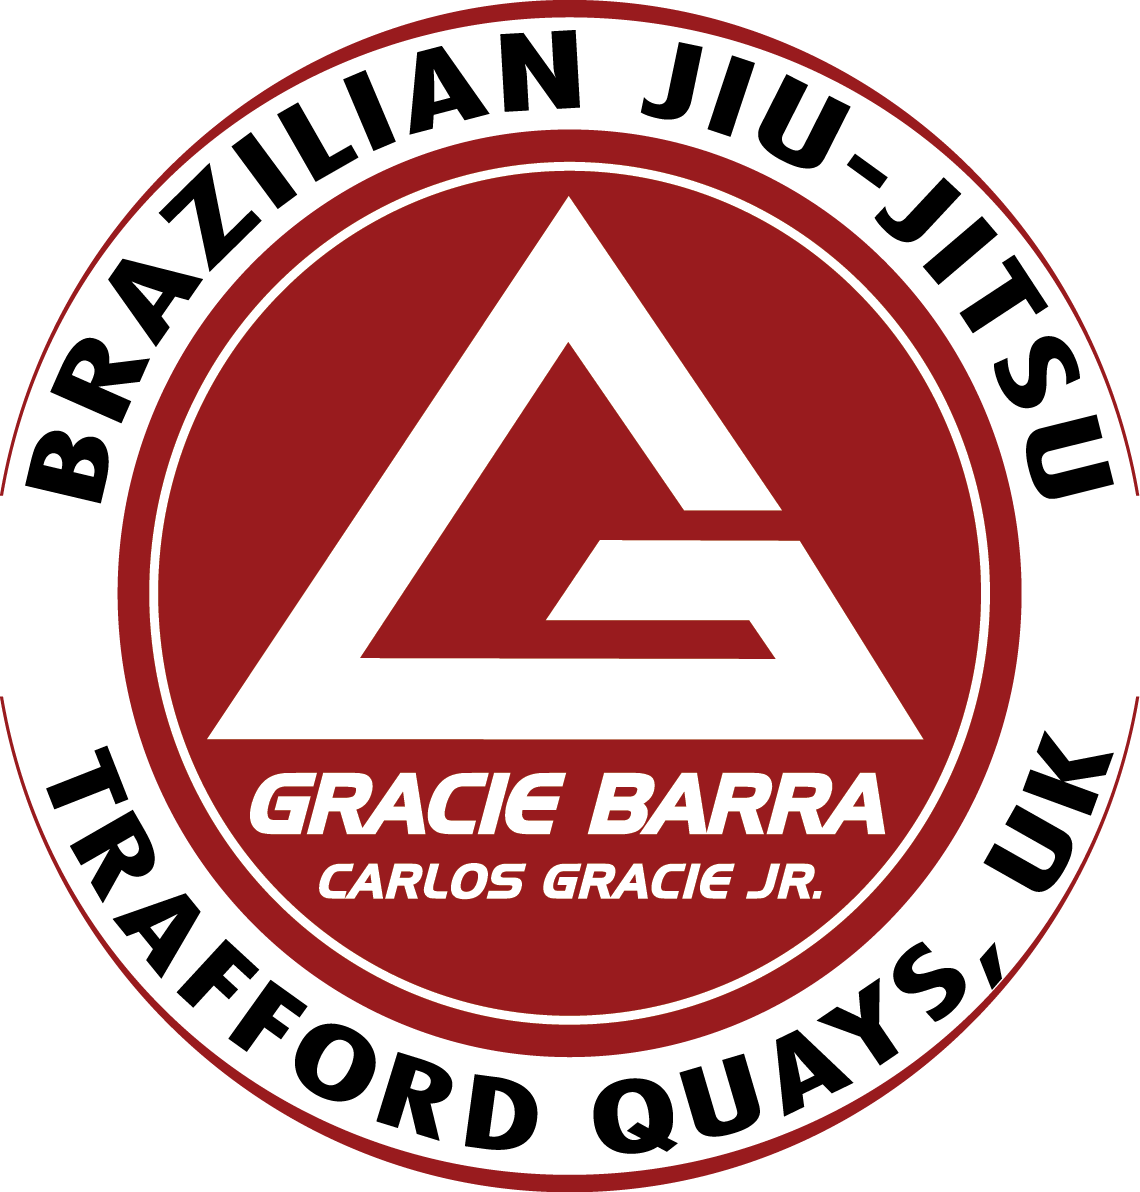 Gracie Barra Trafford Quays - Martial Arts Classes in Eccles